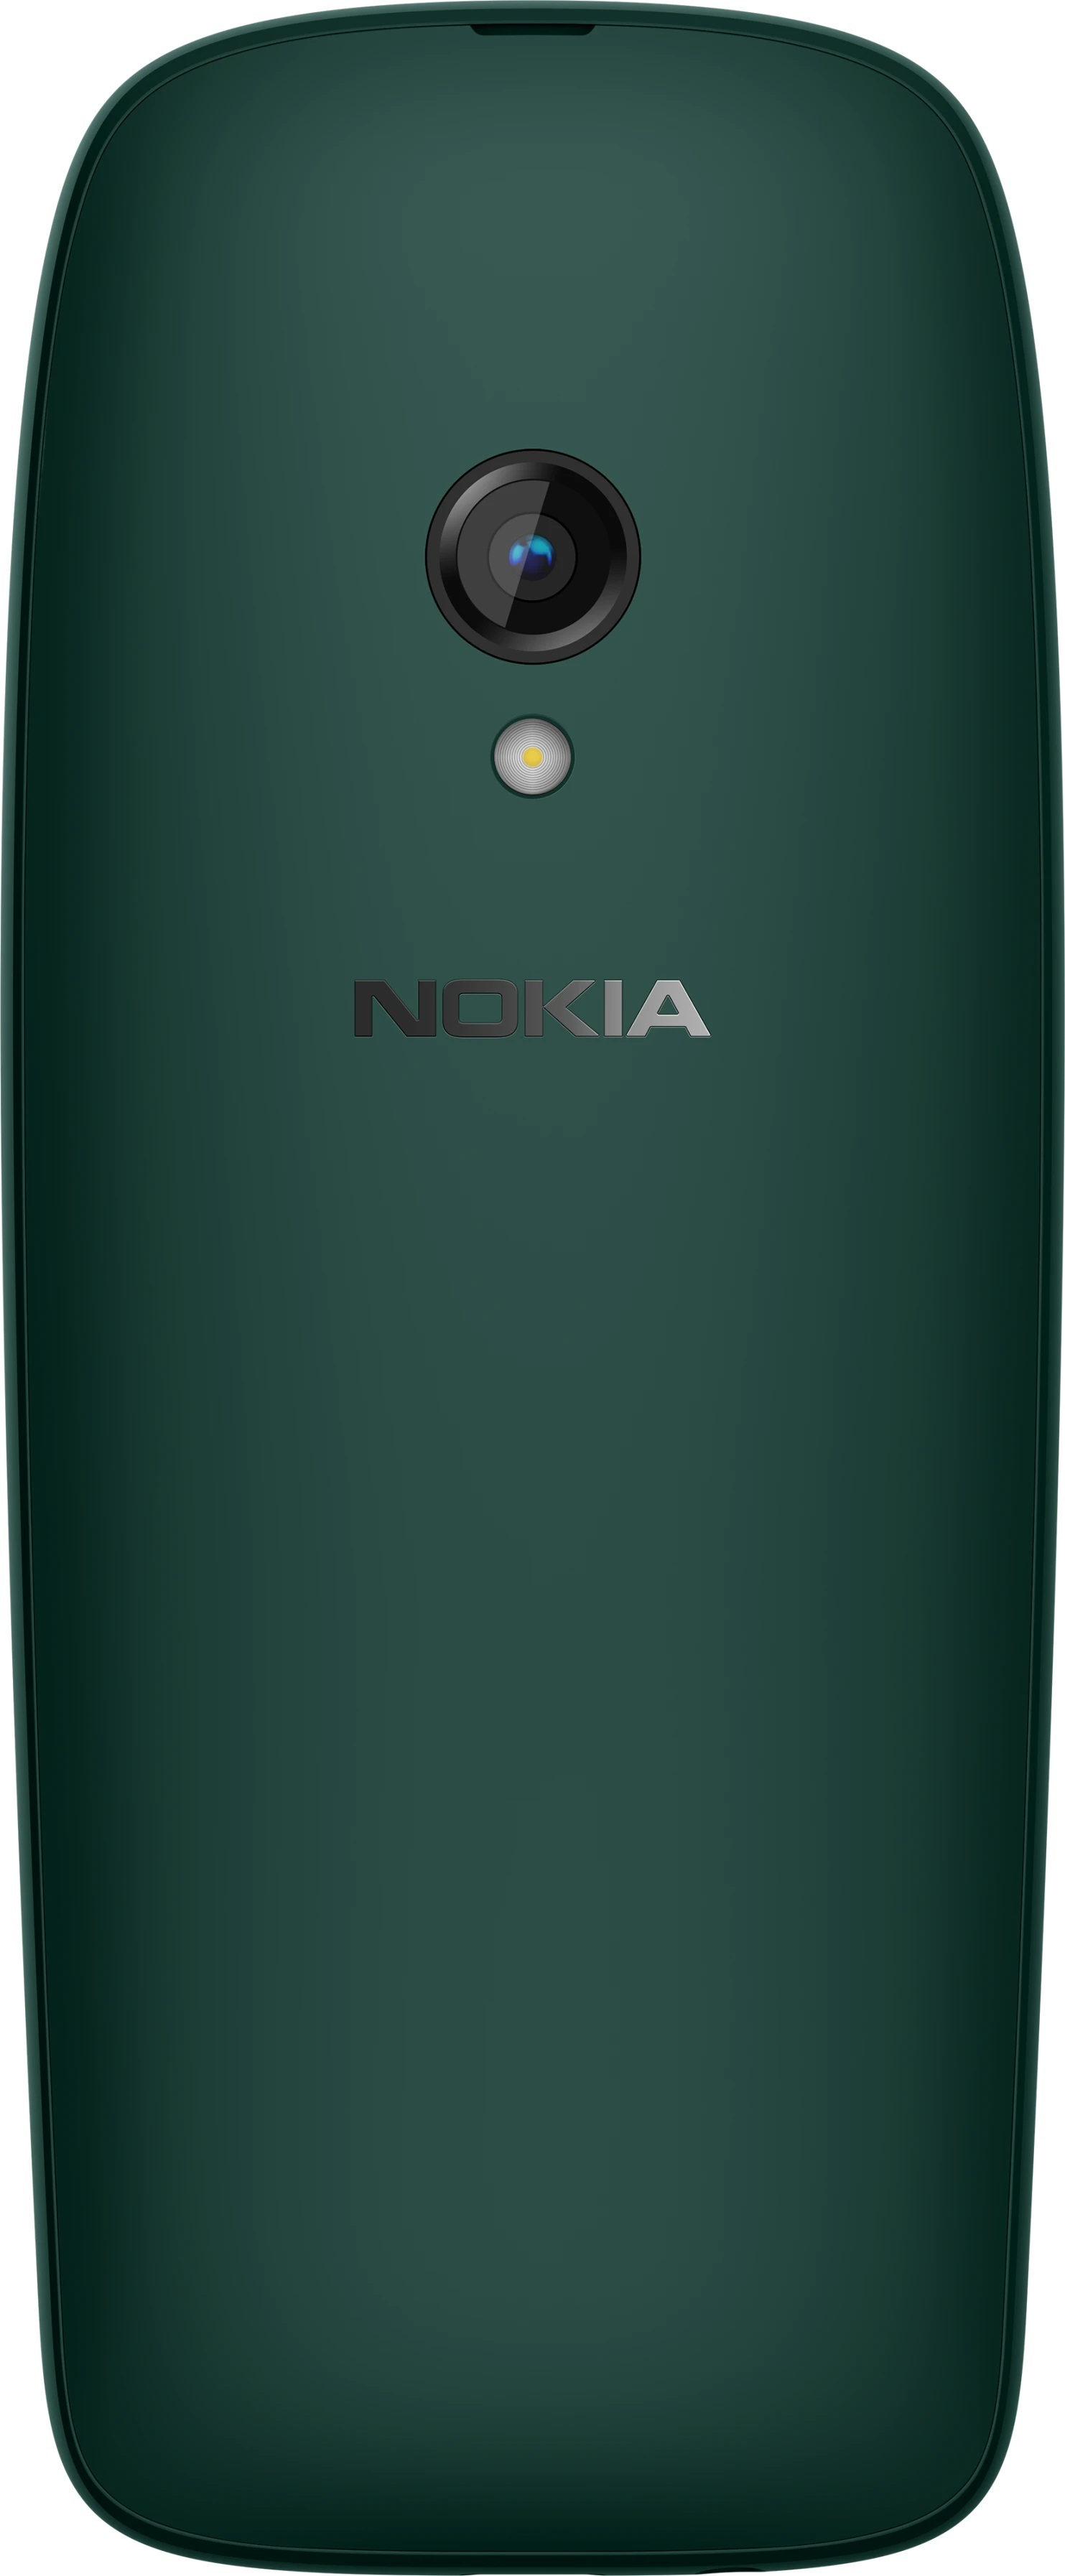 Nokia 6310 dark green / (dualsim)